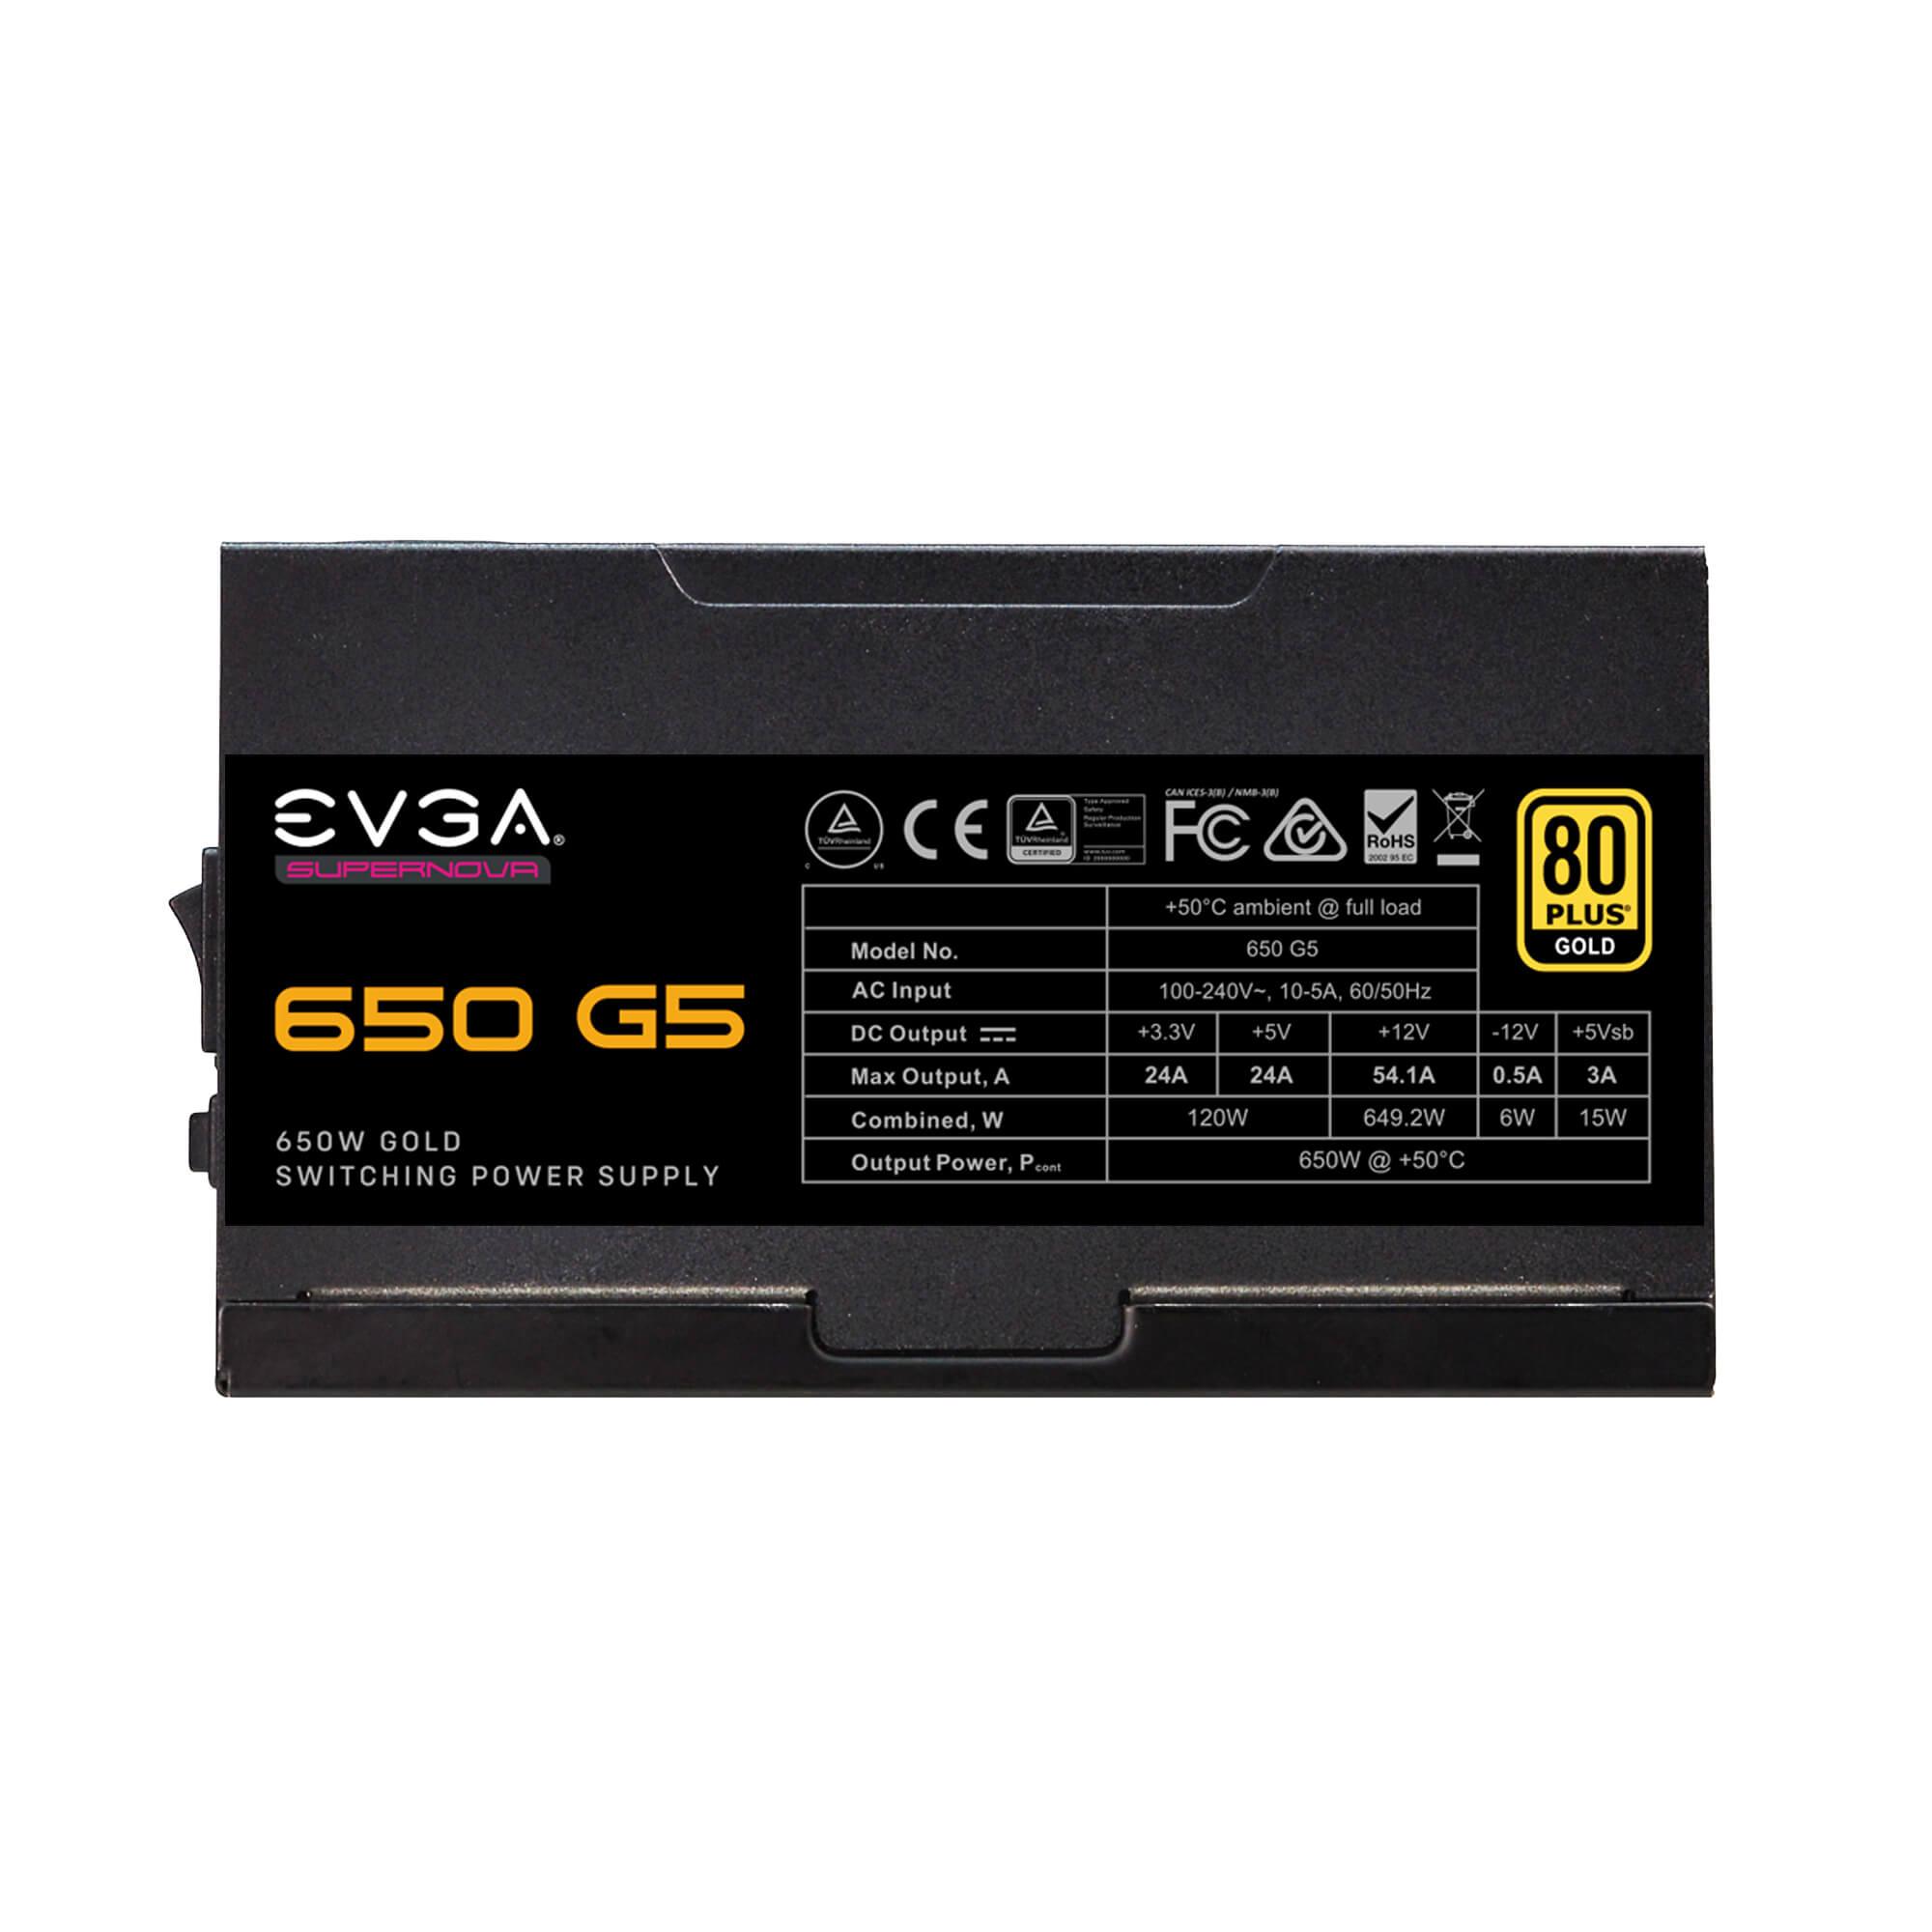 Fuente de Poder EVGA SuperNOVA 650 G5, 80 Plus Gold 650W, Modular - Todo Geek